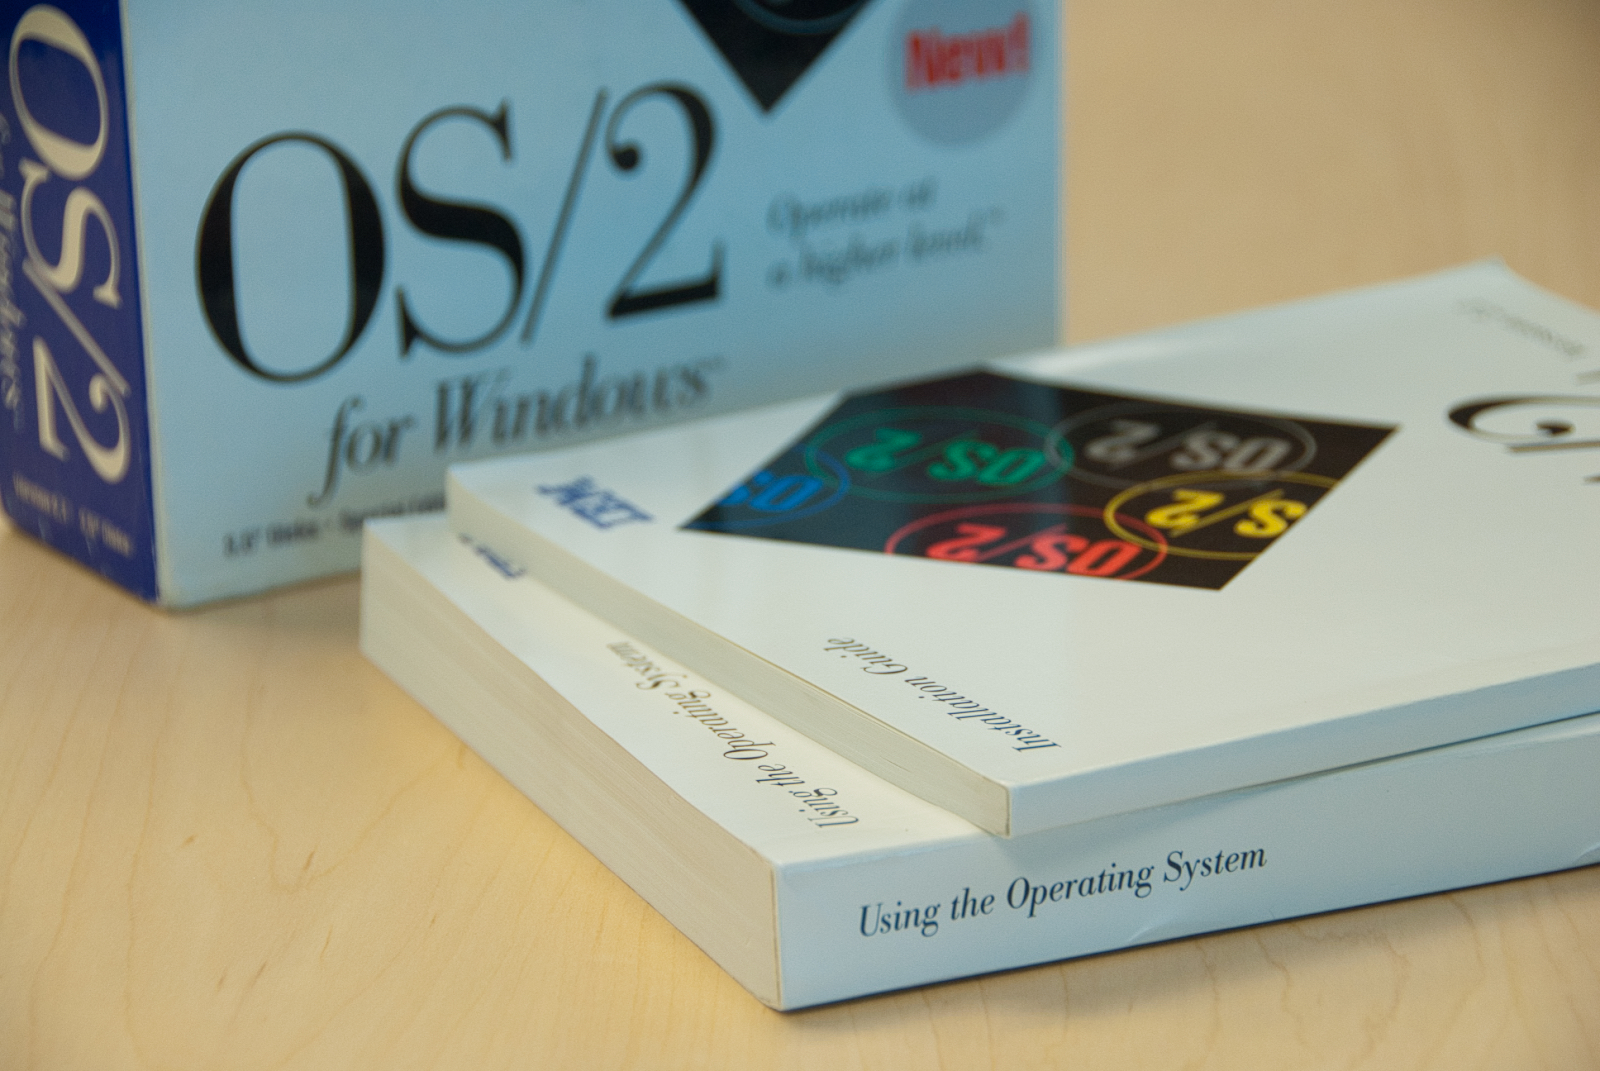 OS/2 Box and Manuals